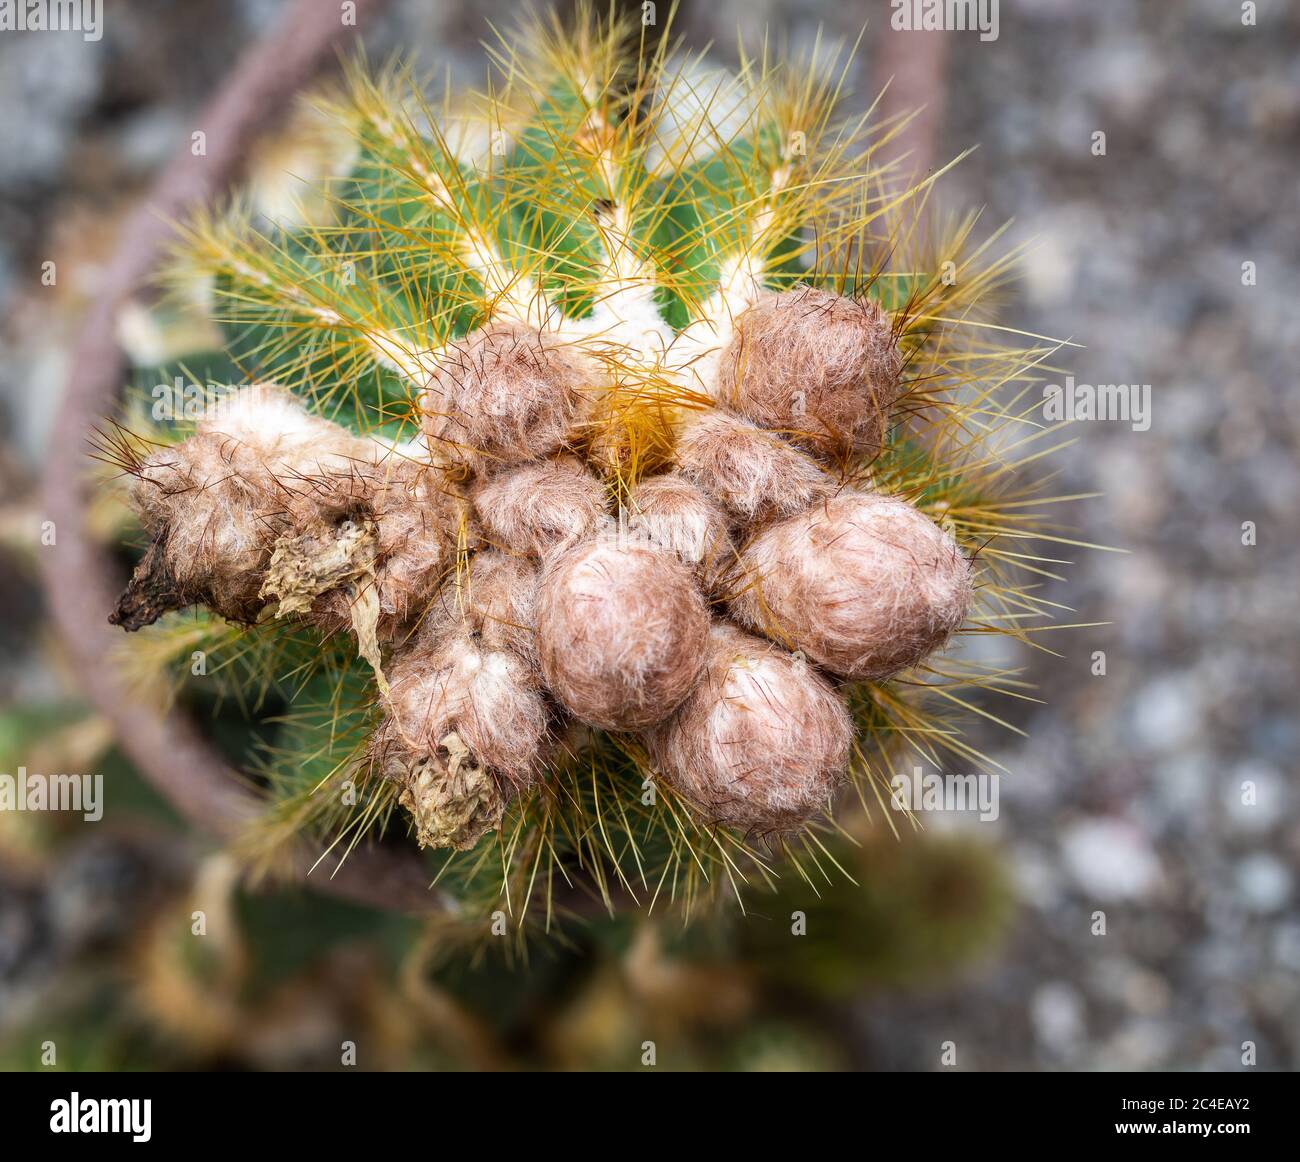 Nahaufnahme des stacheligen, wolligen Kaktus Eriocephala Magnifica, einer einheimischen Pflanze aus der familie der cactaceae aus Südamerika Stockfoto